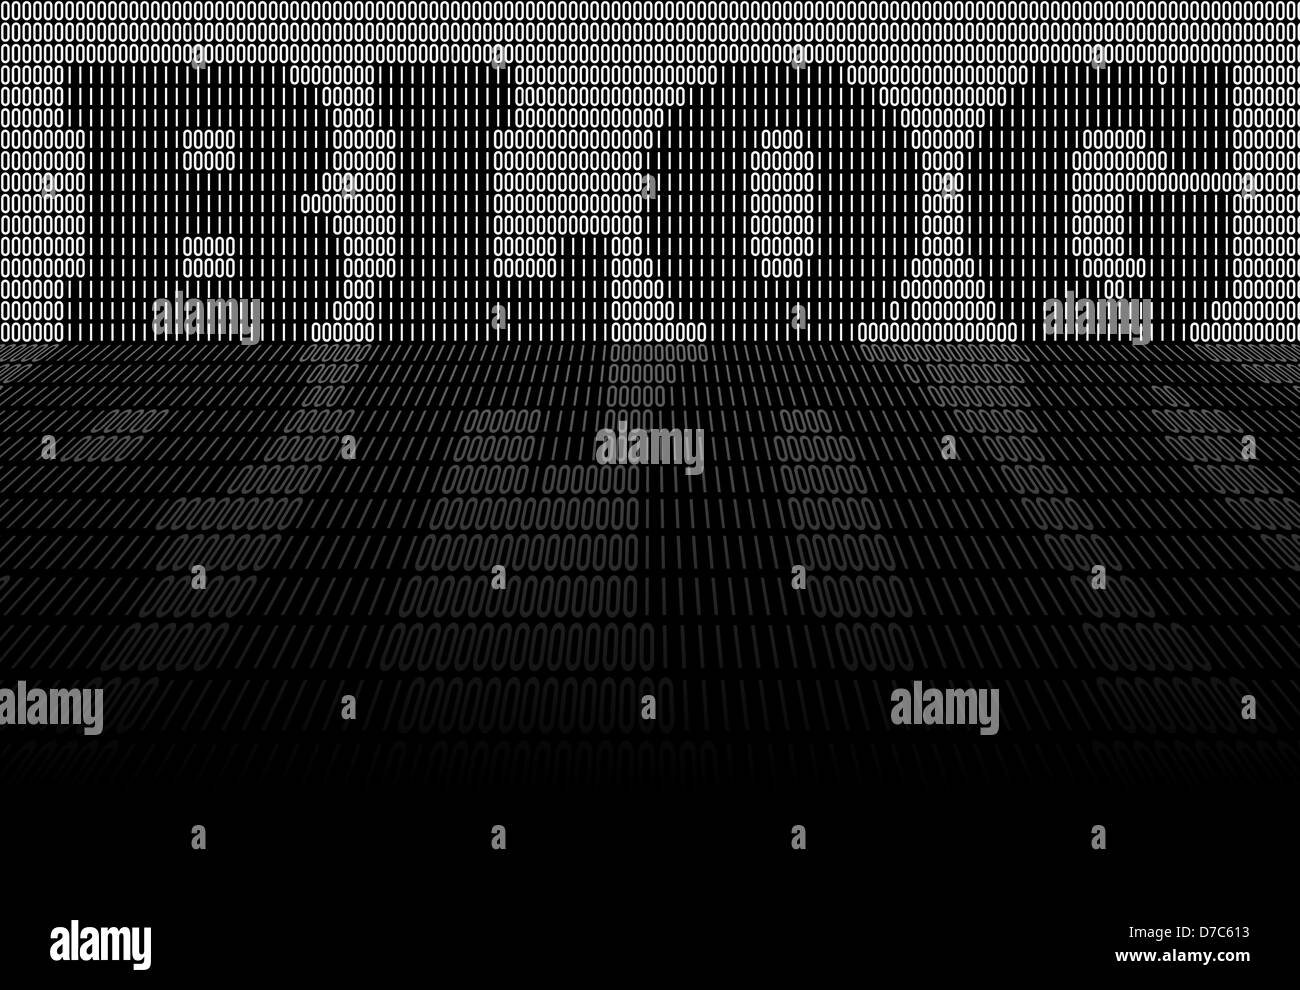 Das Wort BLOG aus Binärcode isoliert auf einem schwarzen Hintergrund gebildet. Stockfoto